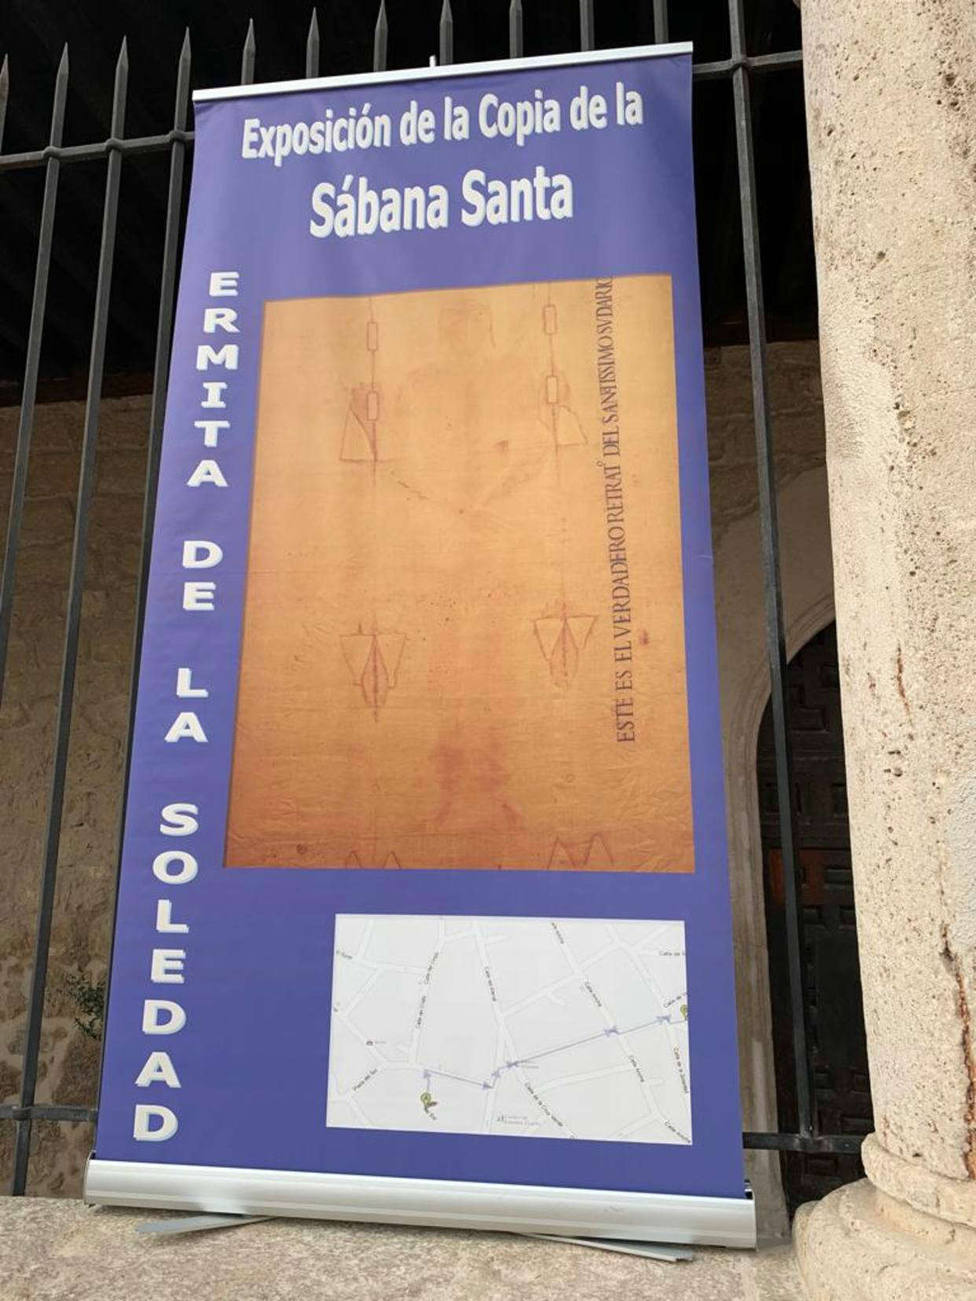 La mejor réplica de la Sábana Santa se expone estos días en Madrid